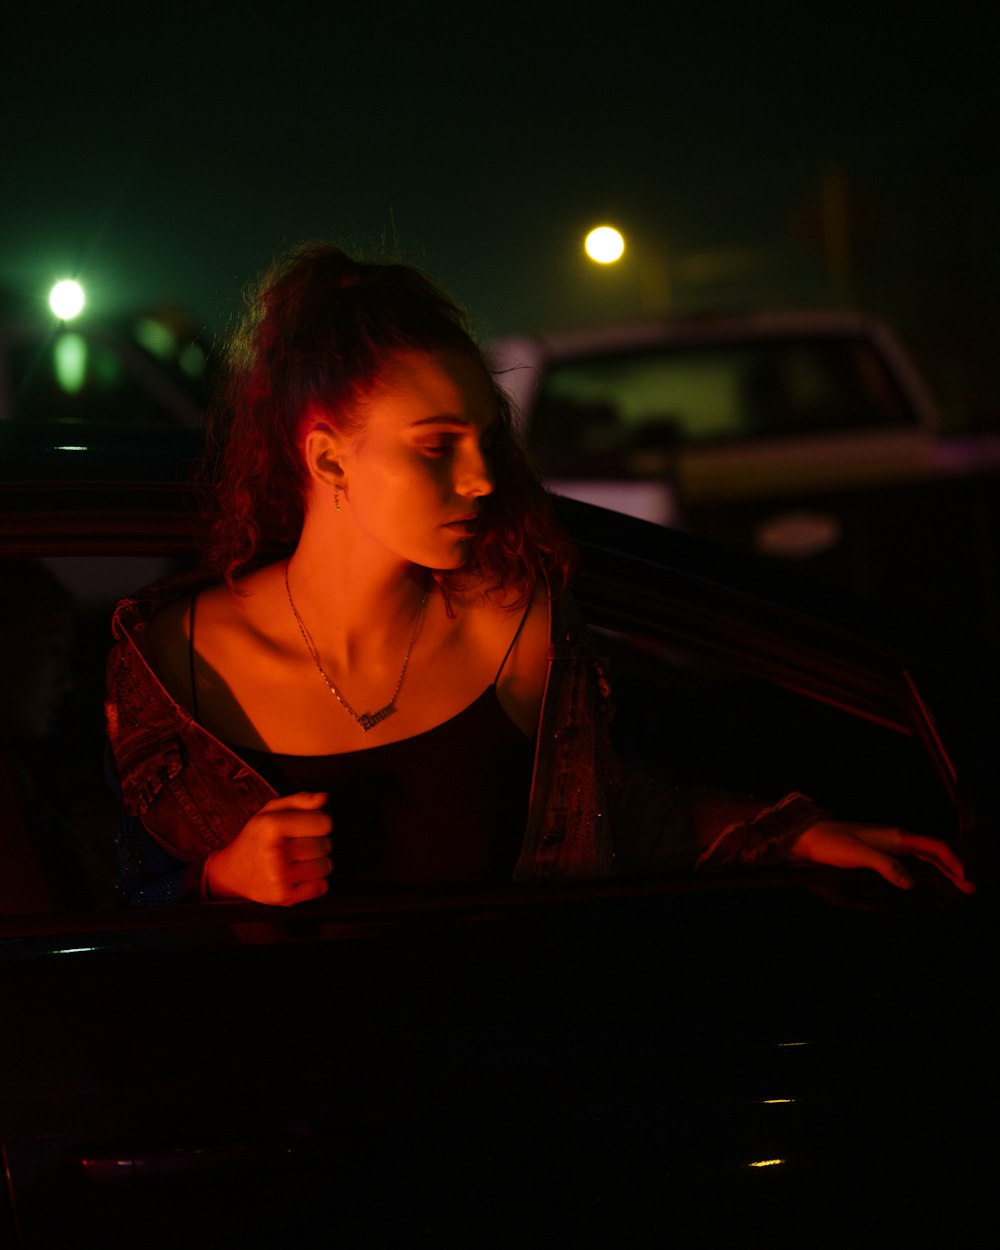 갈색 스파게티 스트랩 탑을 입은 여자가 밤 시간에 차 앞에 서 있다